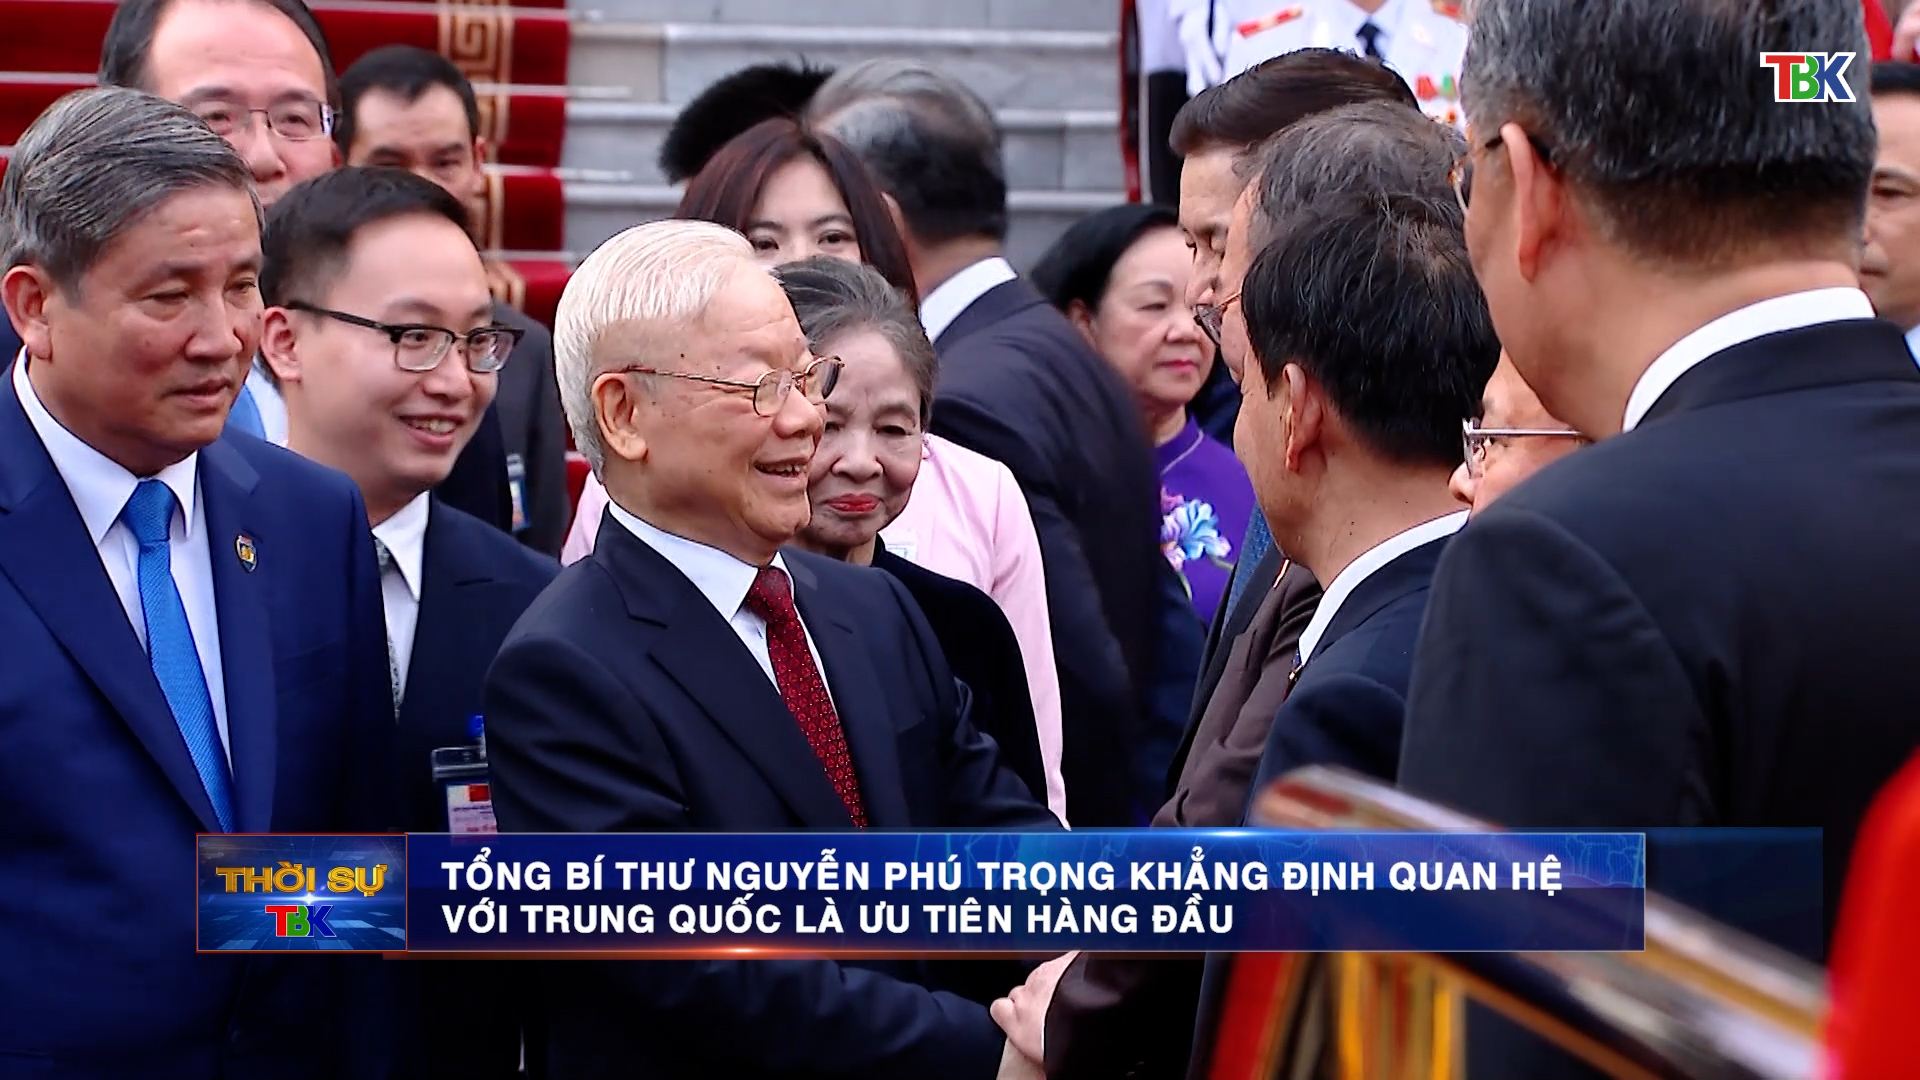 Tổng Bí thư Nguyễn Phú Trọng khẳng định quan hệ với Trung Quốc là ưu tiên hàng đầu